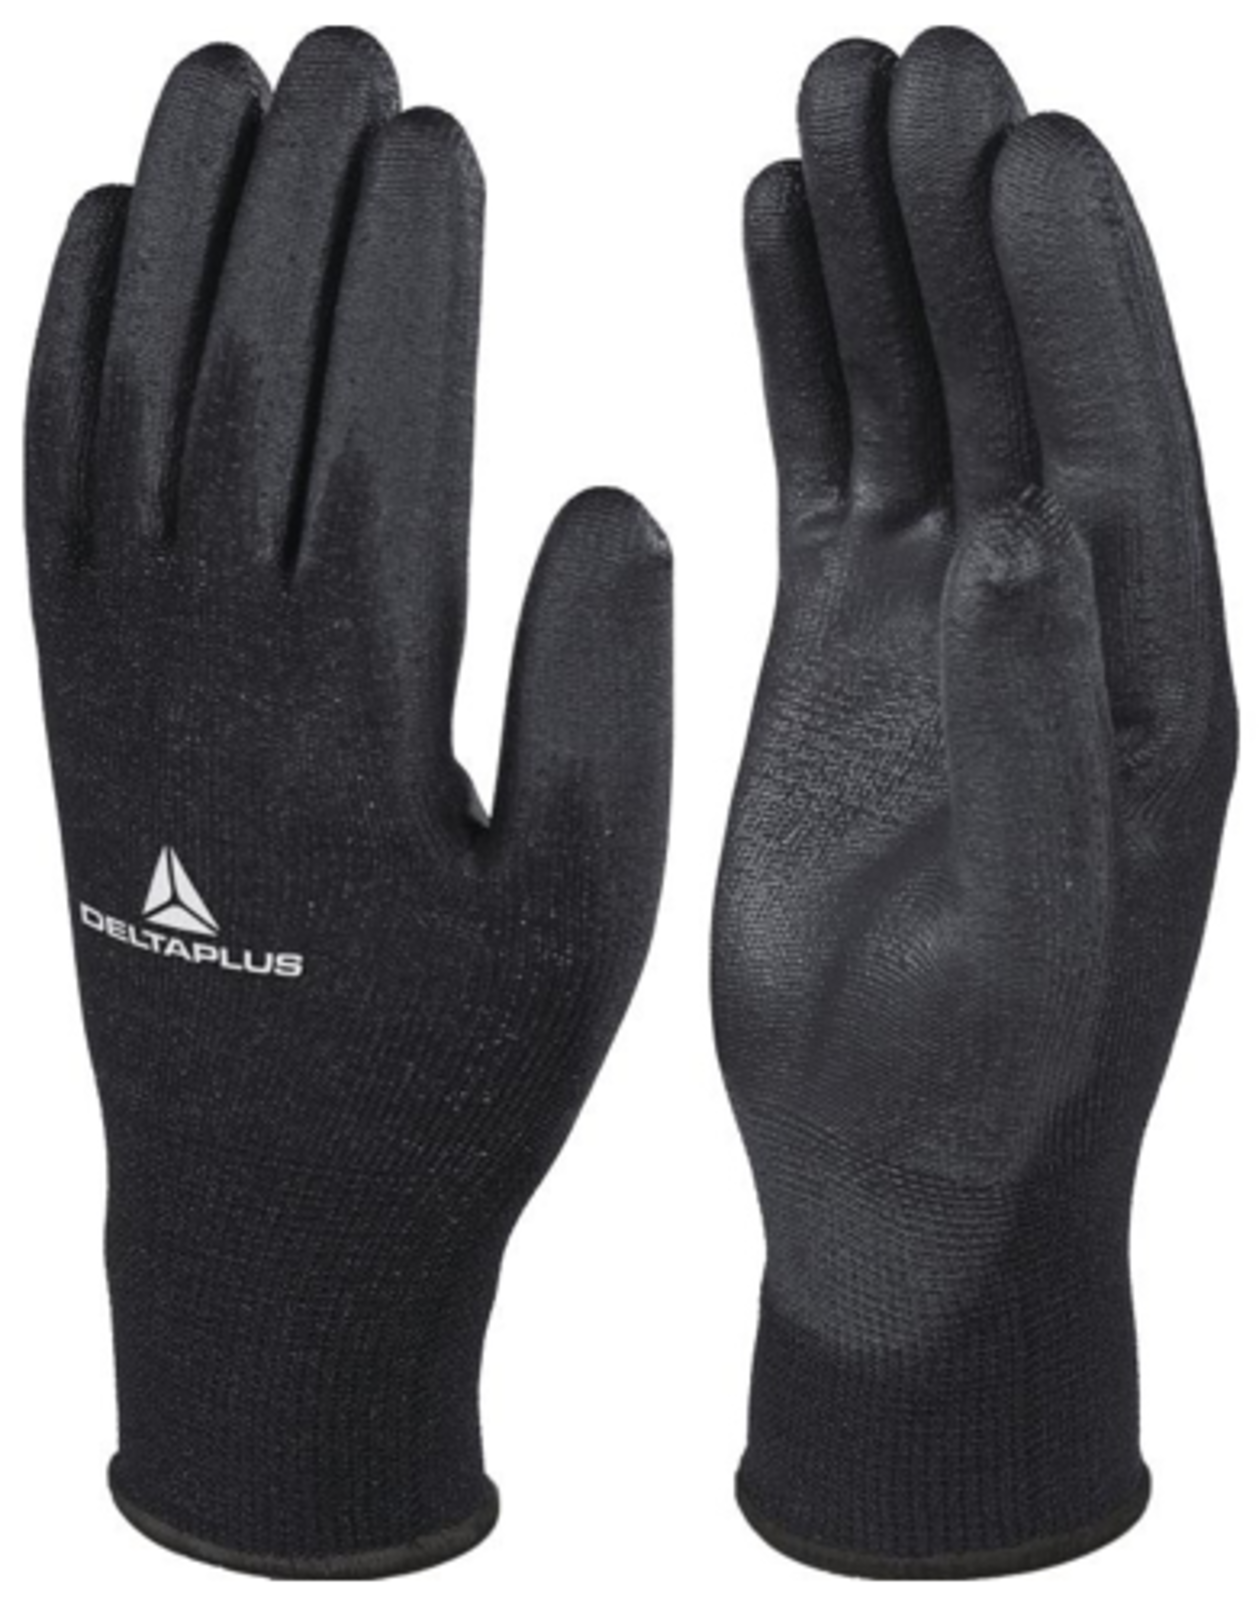 Pracovné rukavice Delta Plus VE702PN - veľkosť: 8/M, farba: čierna